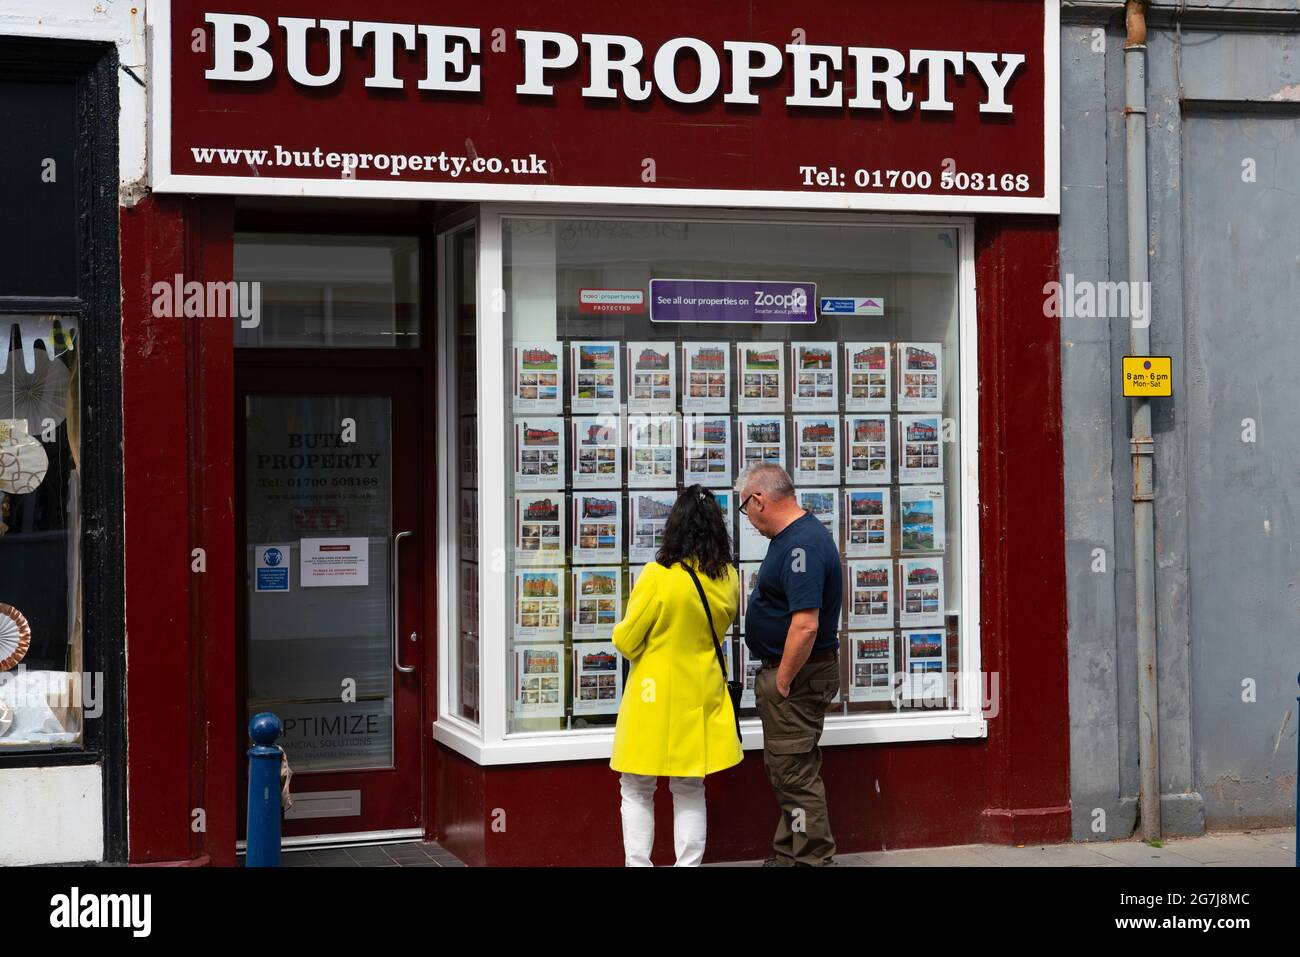 Deux membres SO f public regardant des maisons à vendre dans le vent OW de l'agence immobilière à Rothesay , île de Bute, Ecosse, Royaume-Uni Banque D'Images